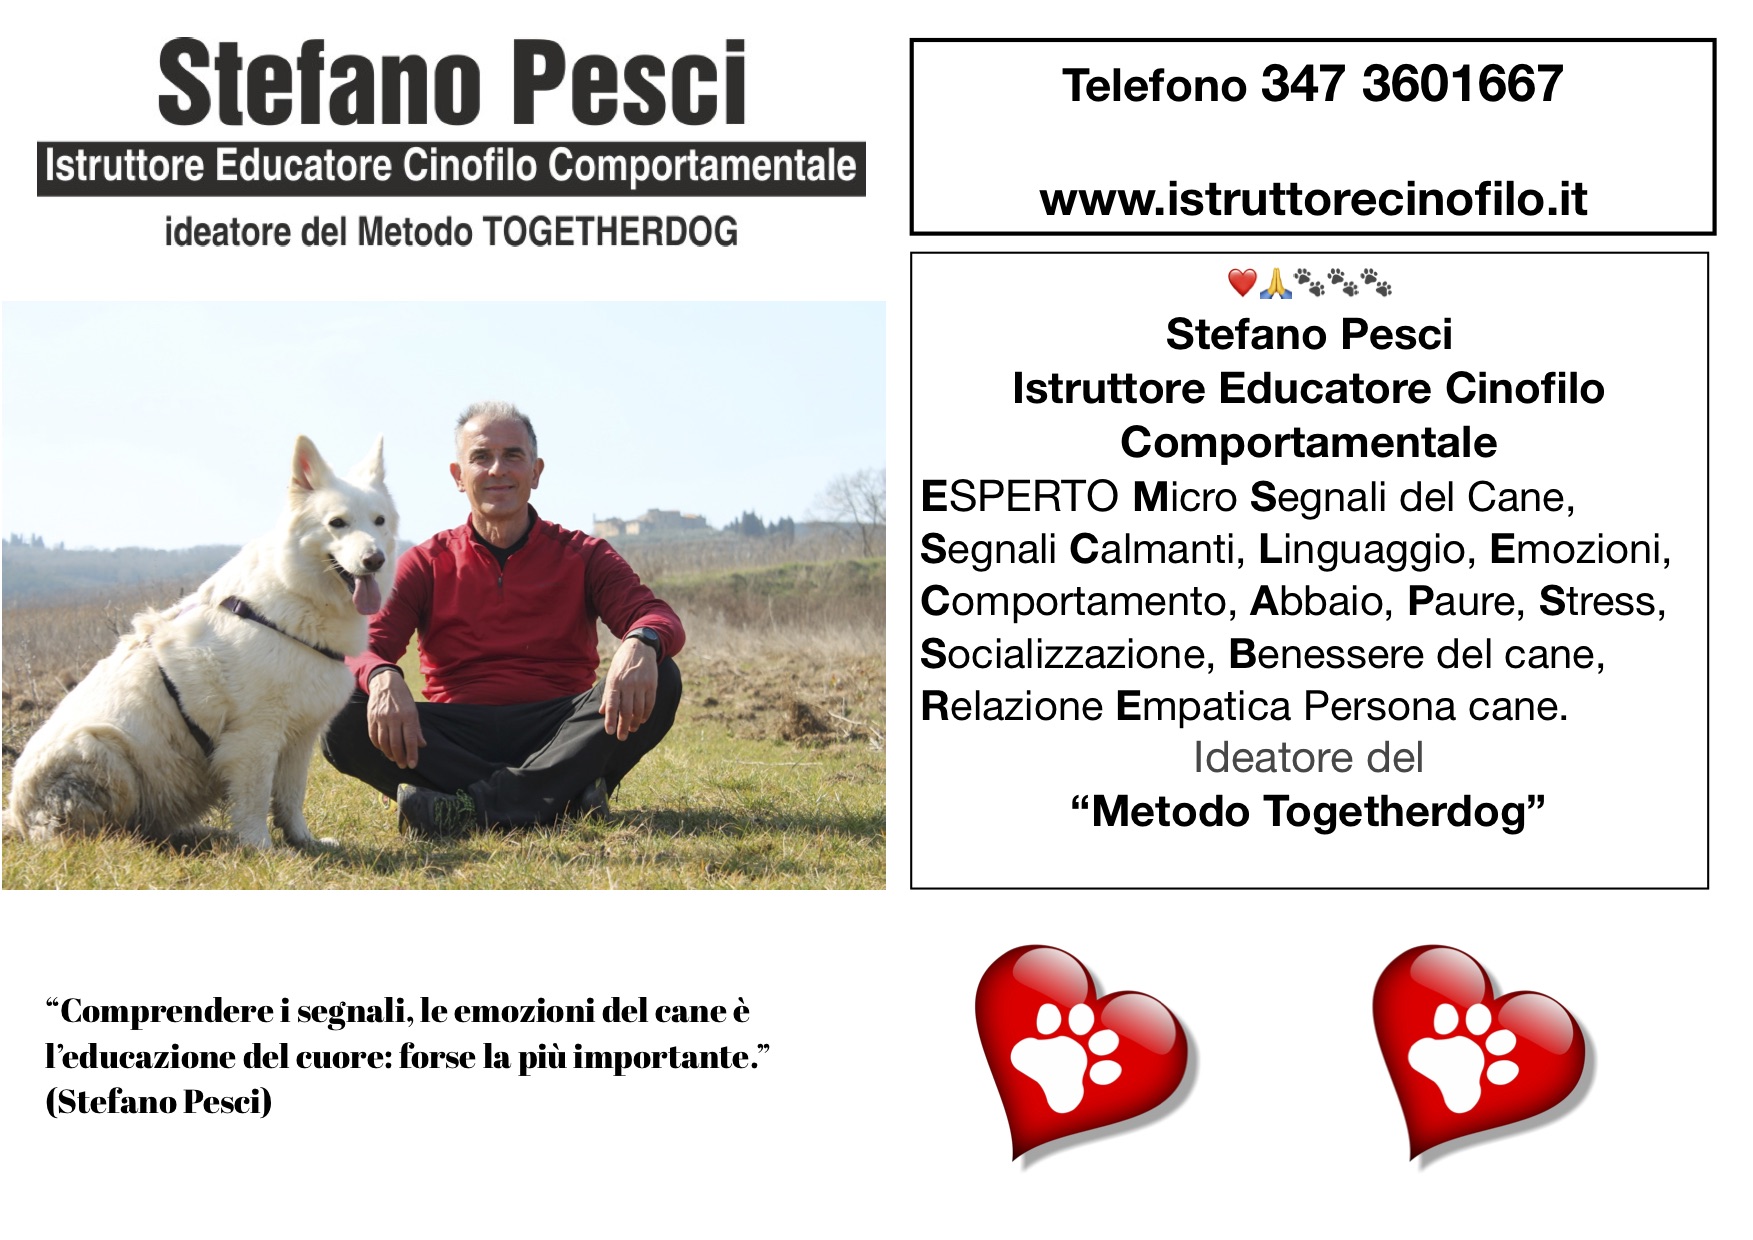 Stefano Pesci istruttore Educatore Cinofilo Comportamentale